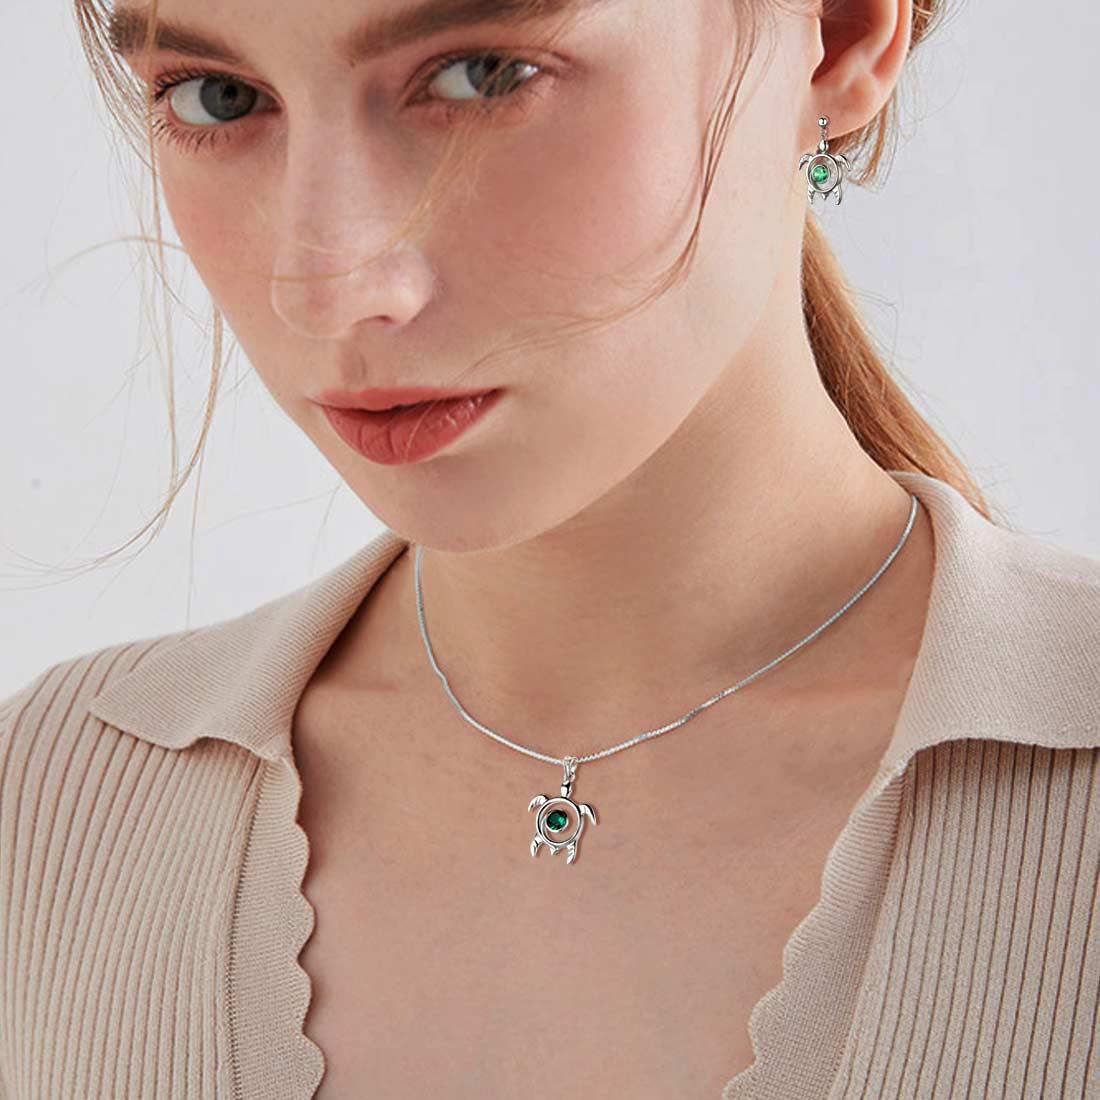 Aurora Tears Girls Women Turtle Earrings Necklace Jewelry Sets 3pcs